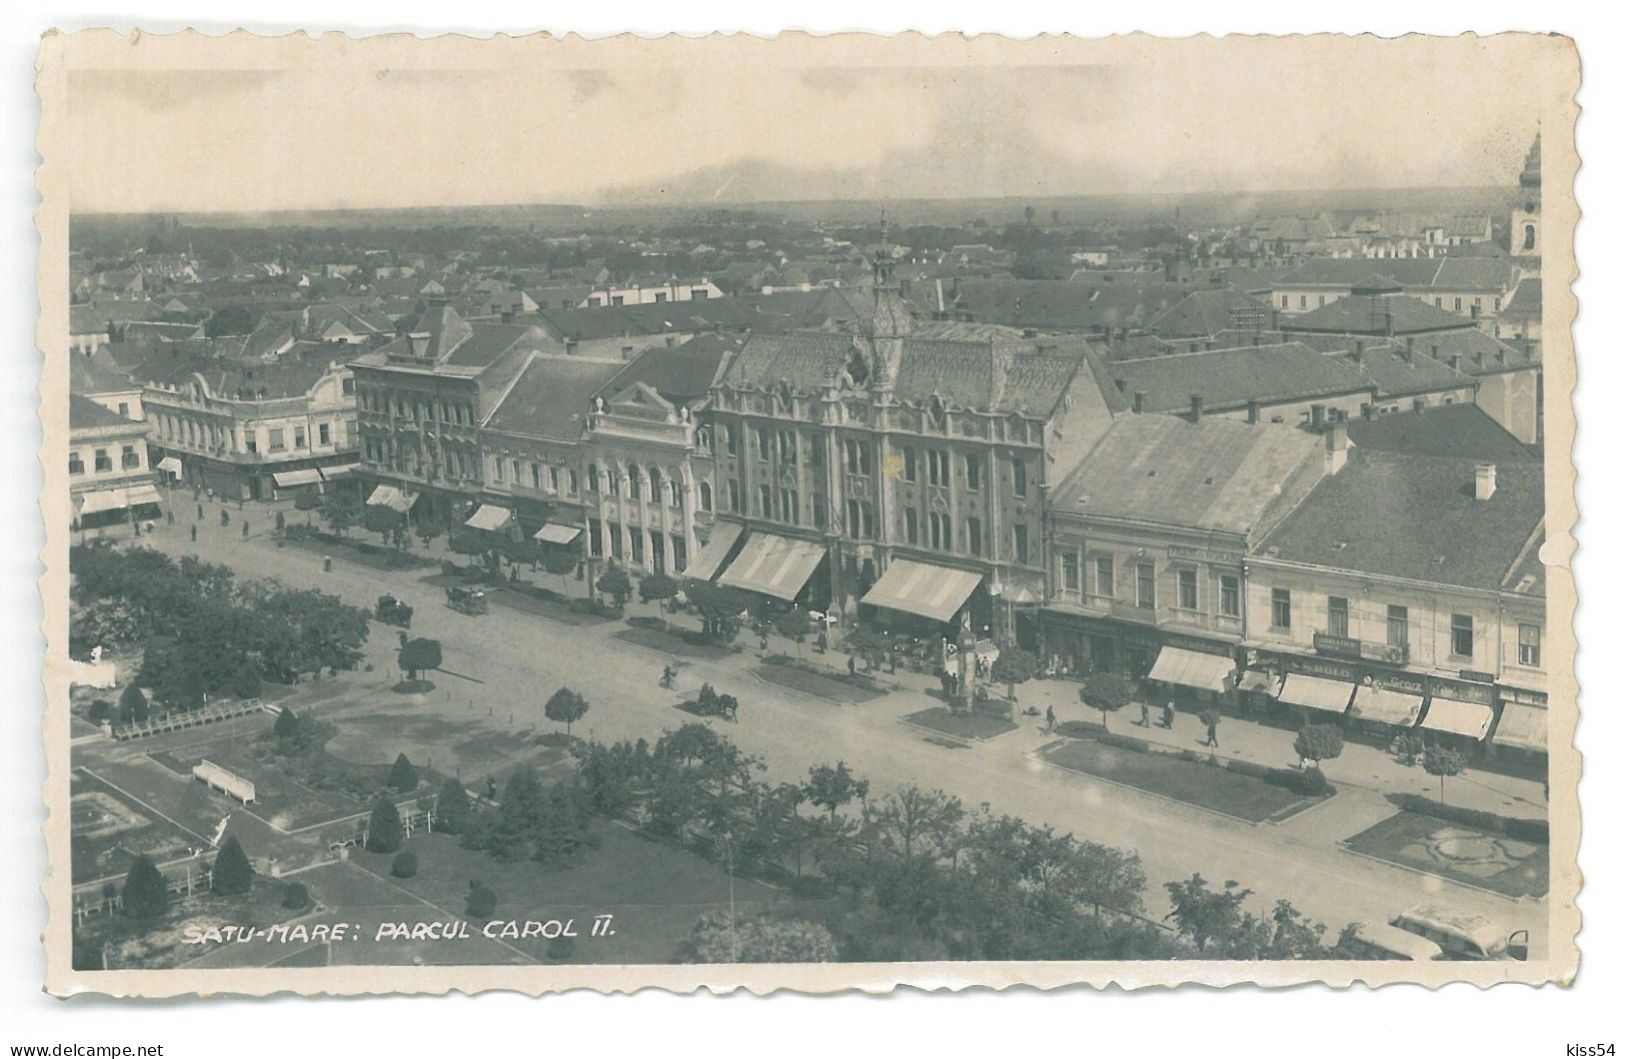 RO 47 - 25224 SATU-MARE, Carol Park, Panorama, Romania - Old Postcard, Real Photo - Used - 1927 - Romania